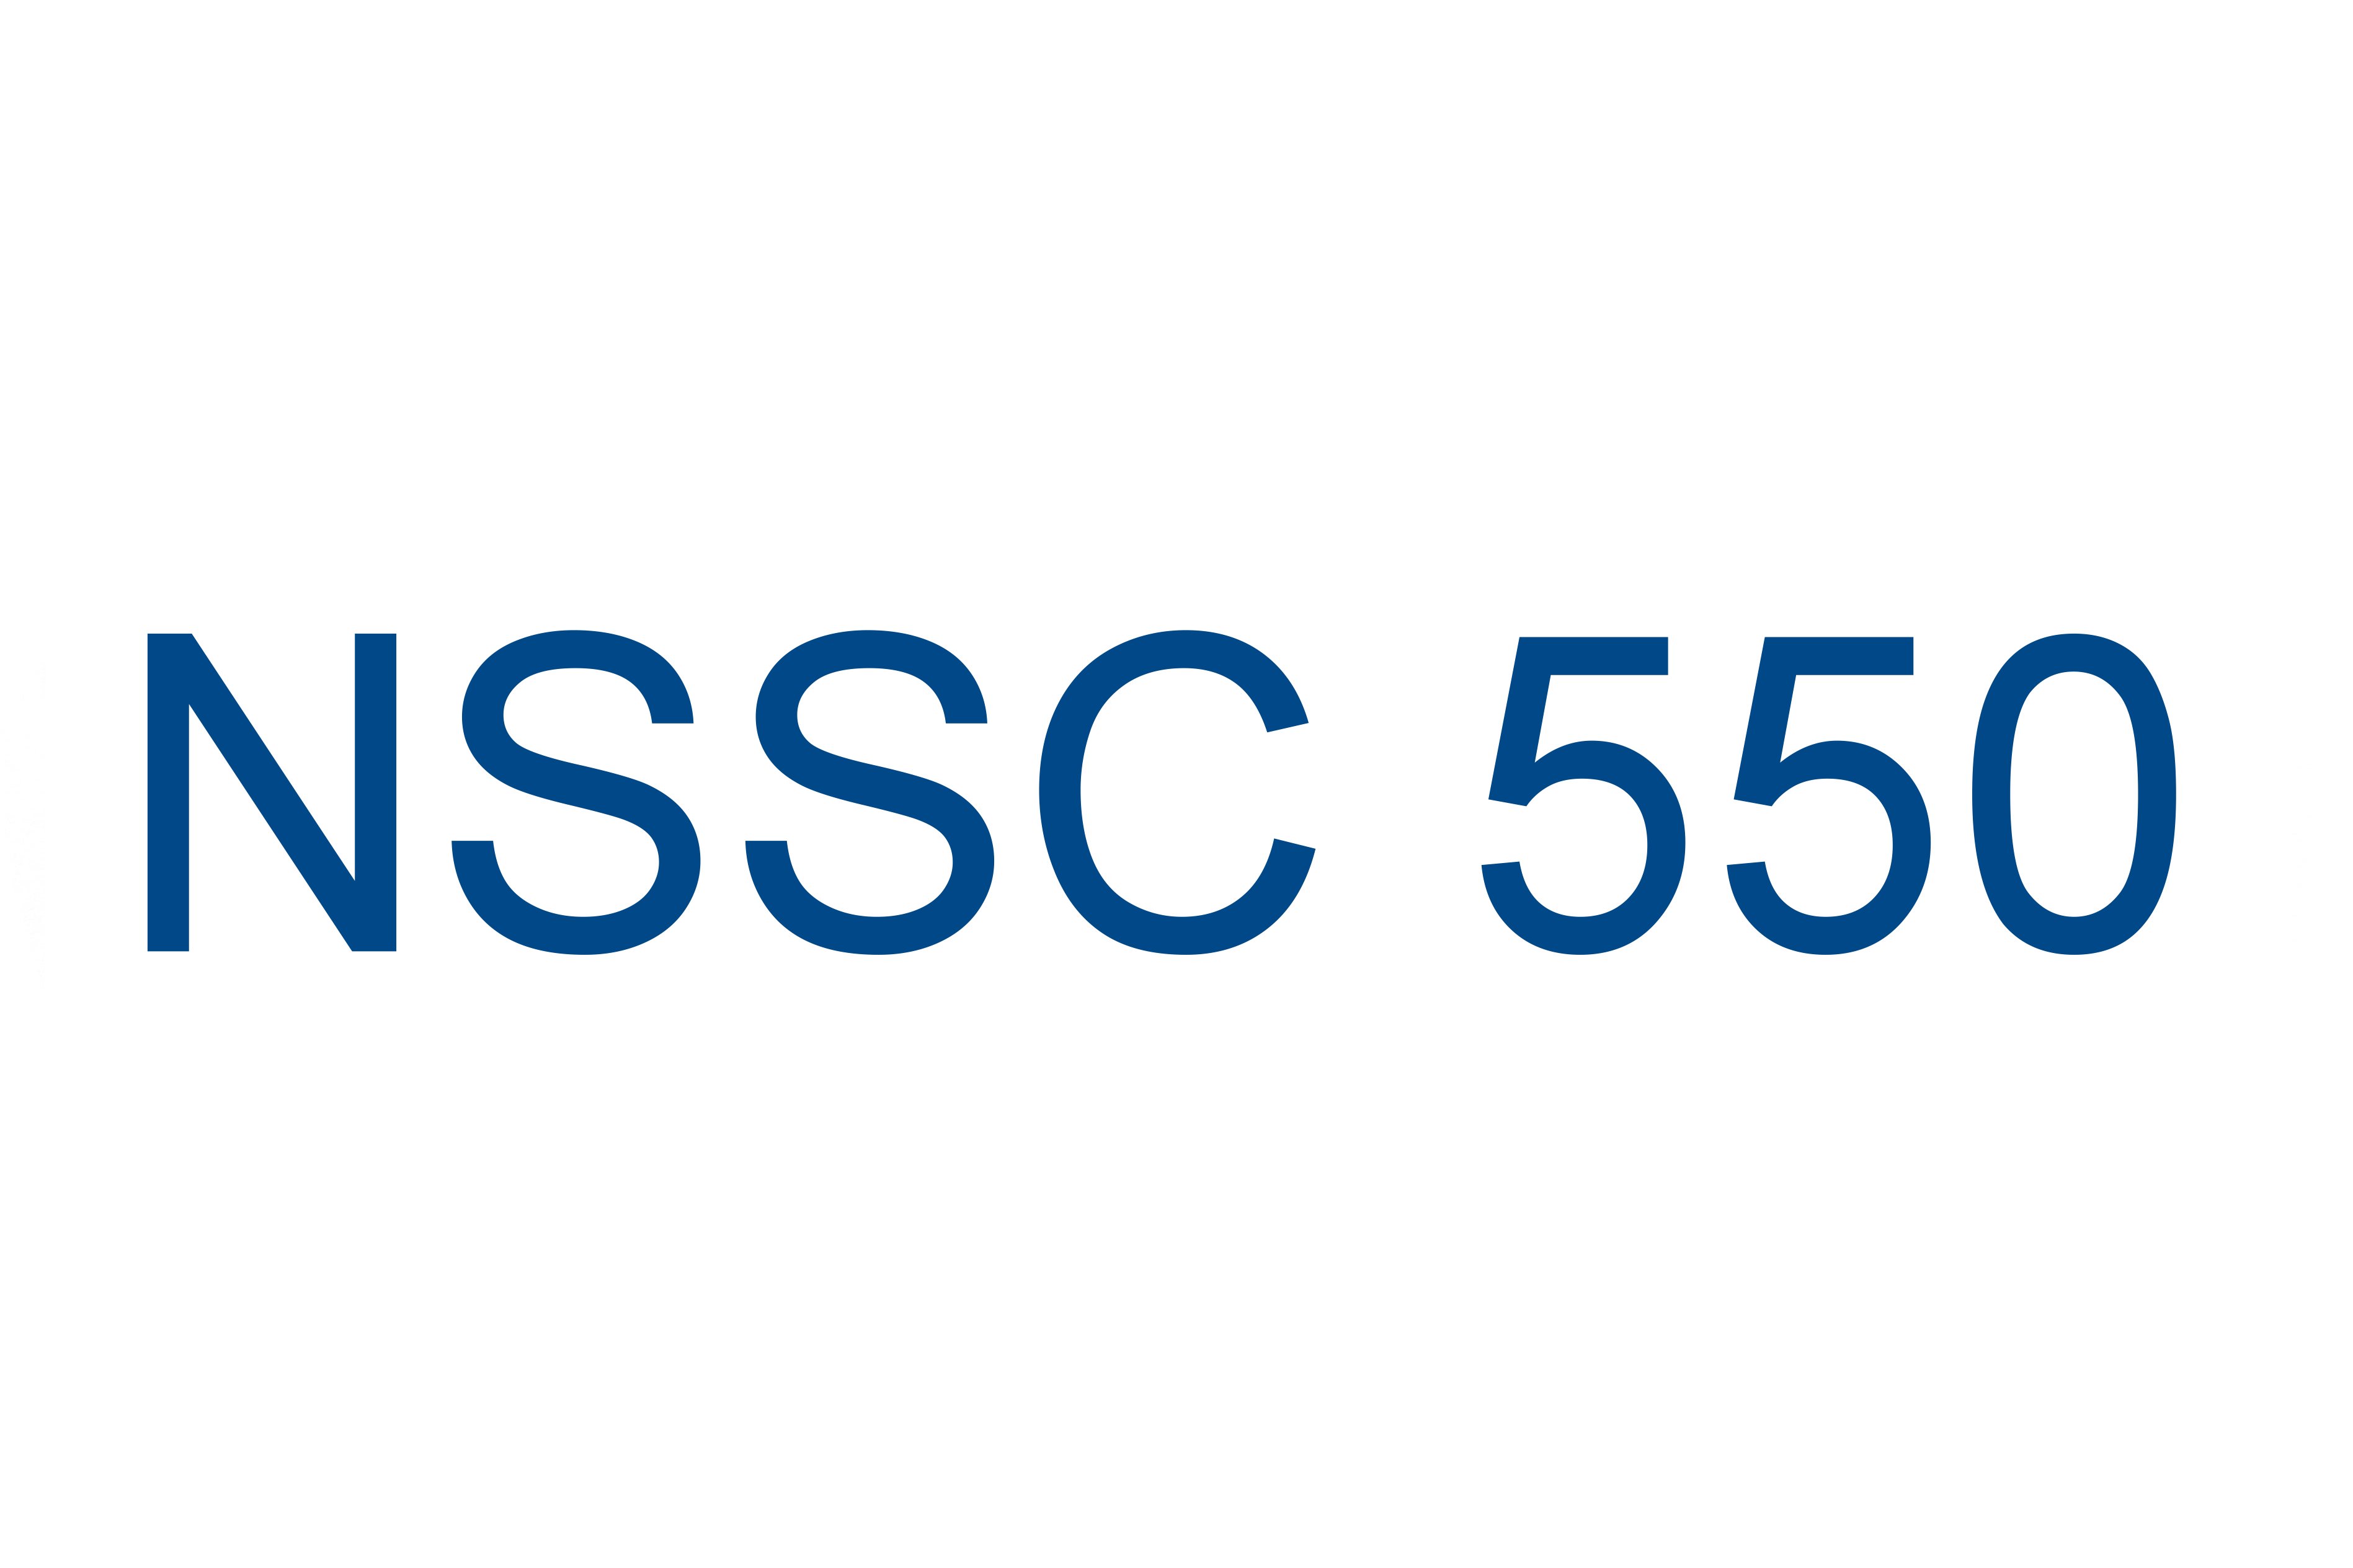 NSSC 550